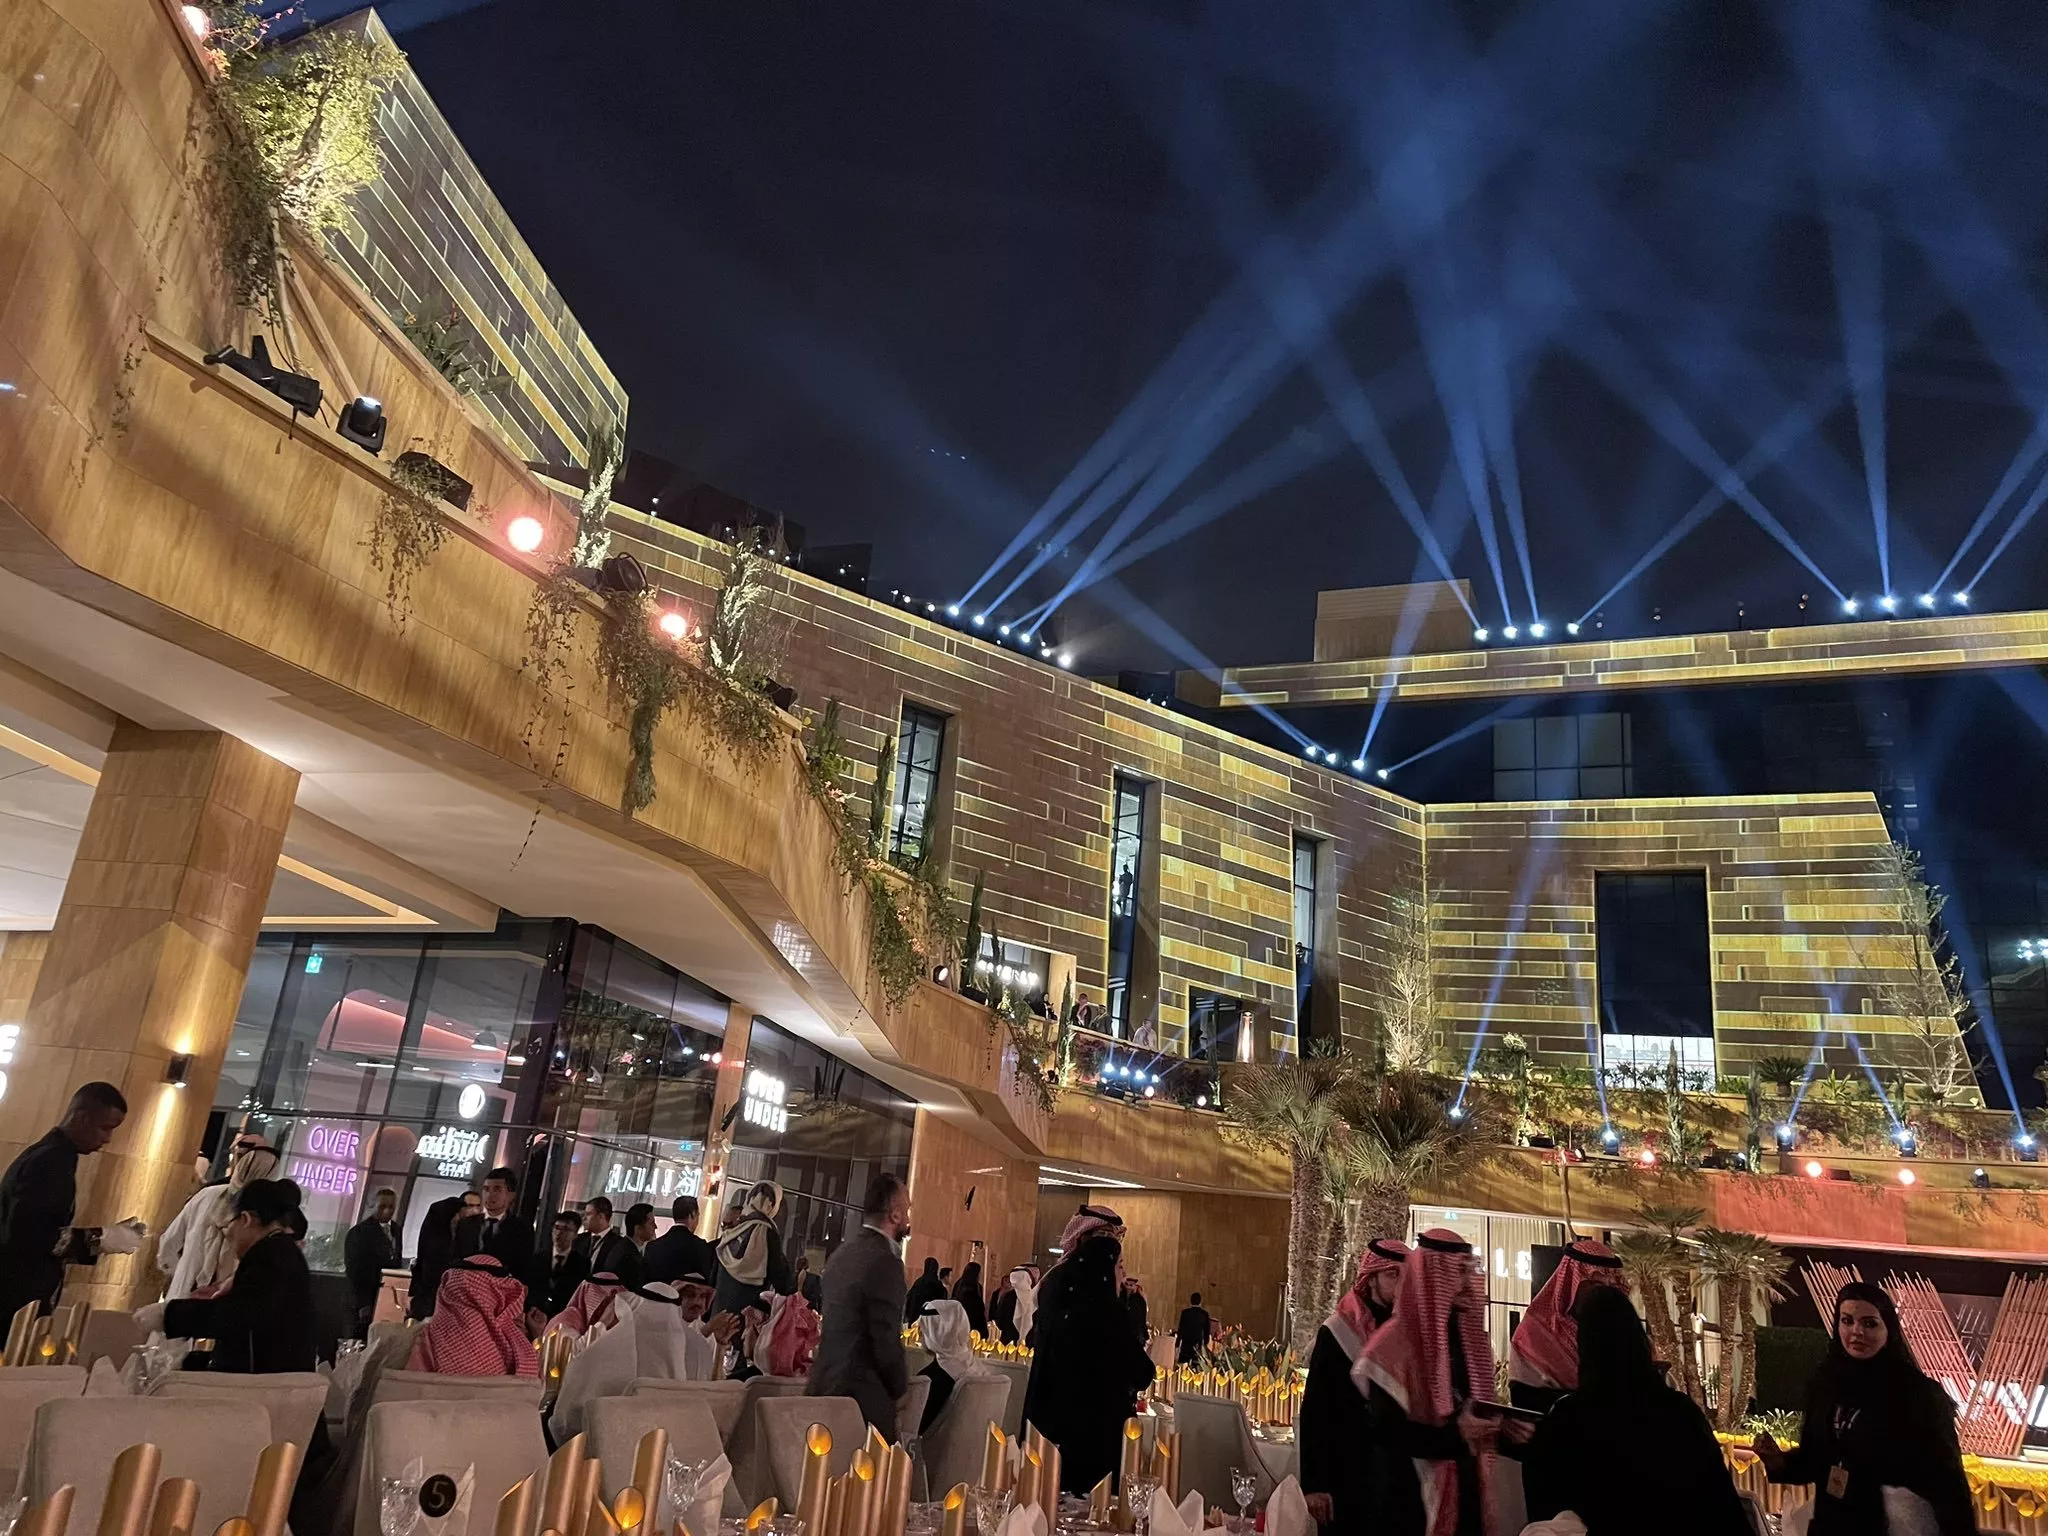 أفضل افنيو ومجمعات في الرياض يمكنكِ التوجه إليها للاستمتاع بوقتكِ